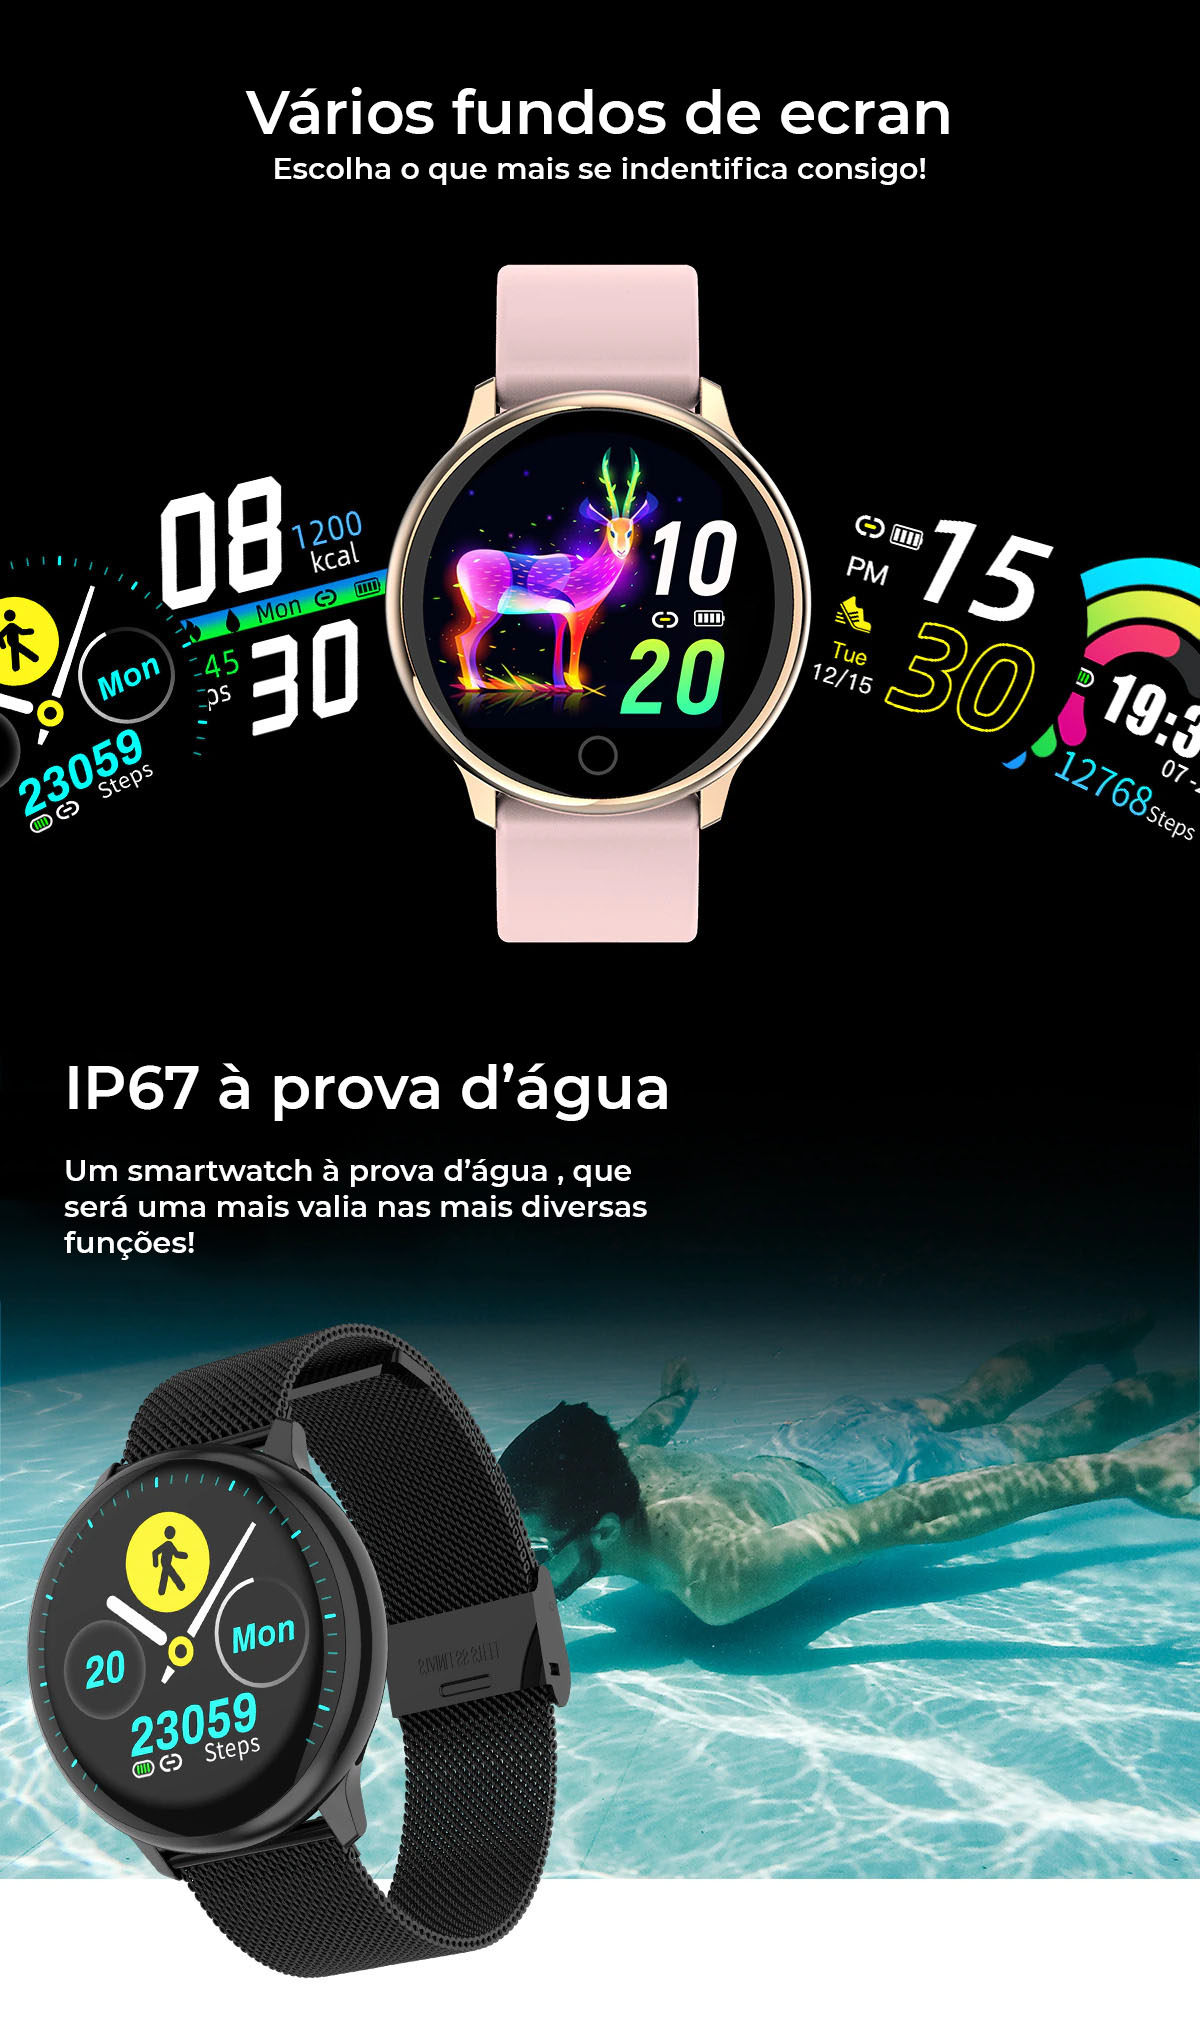 Relógio Smartwatch Q16 com Bluetooth à prova de água, tenha todas as funcionalidades do seu Smartphone - Android ou IPhone no seu pulso